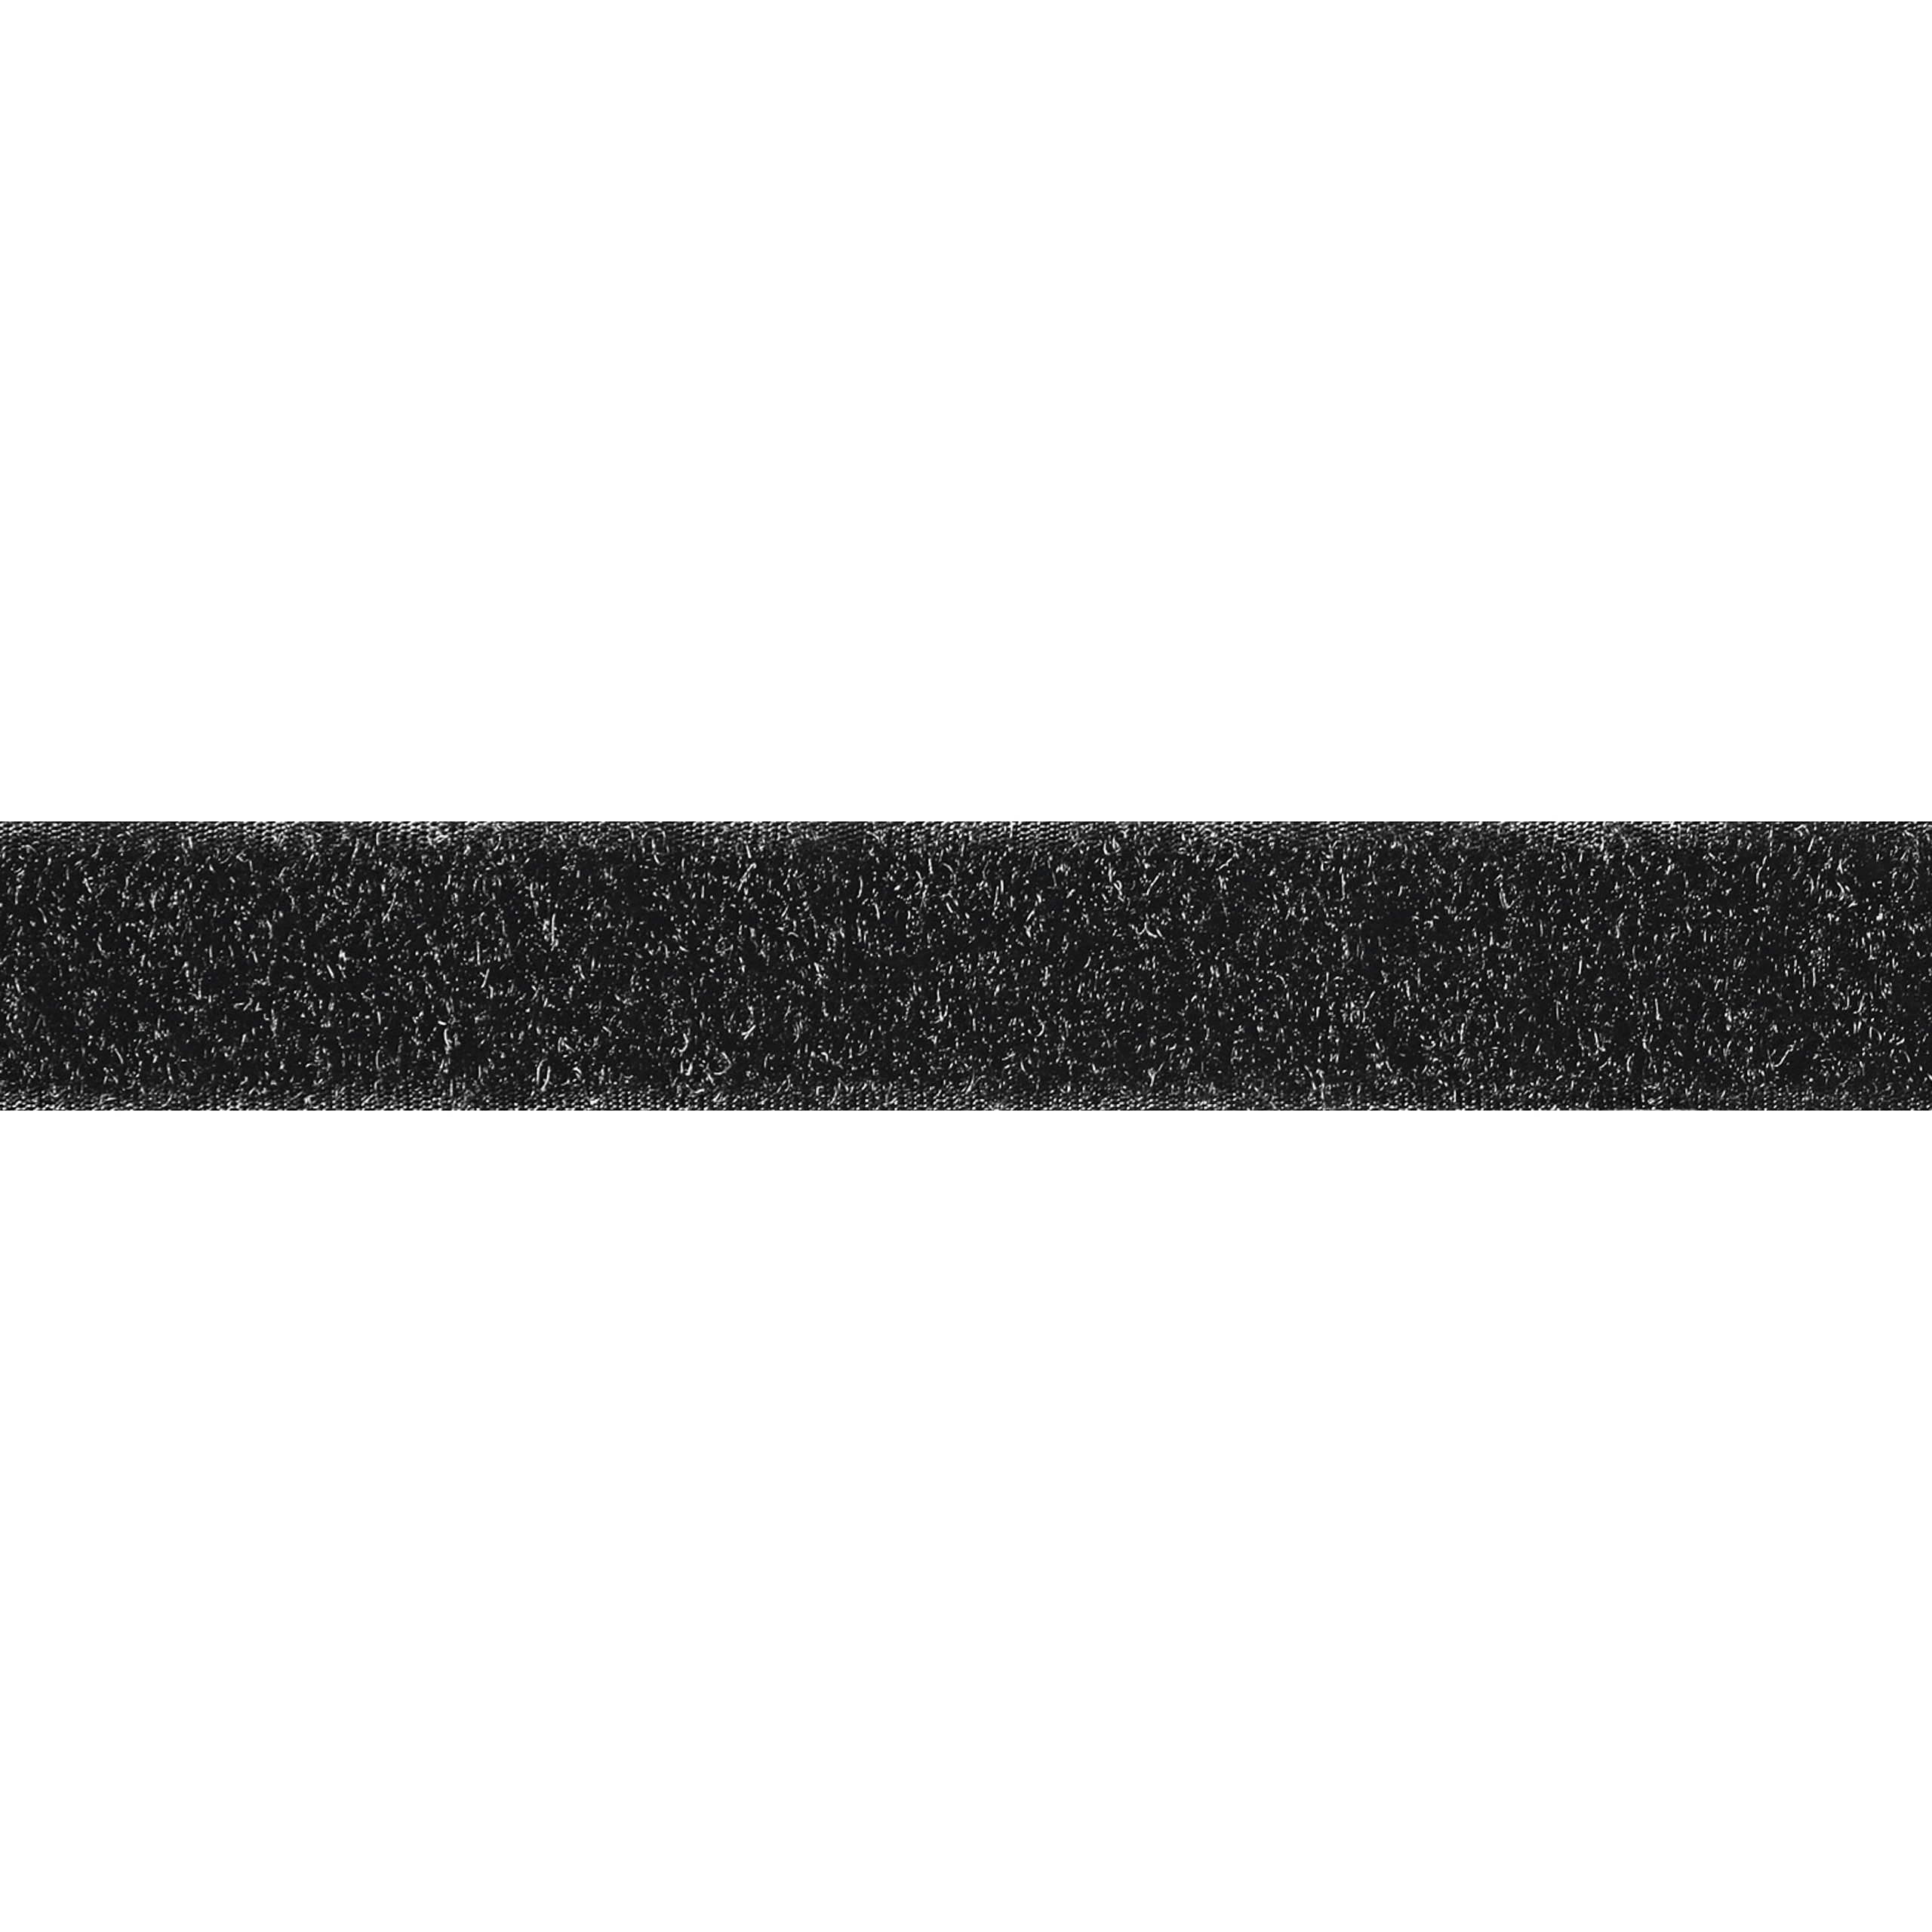 Flauschband selbstklebend Meterware schwarz, 50mm